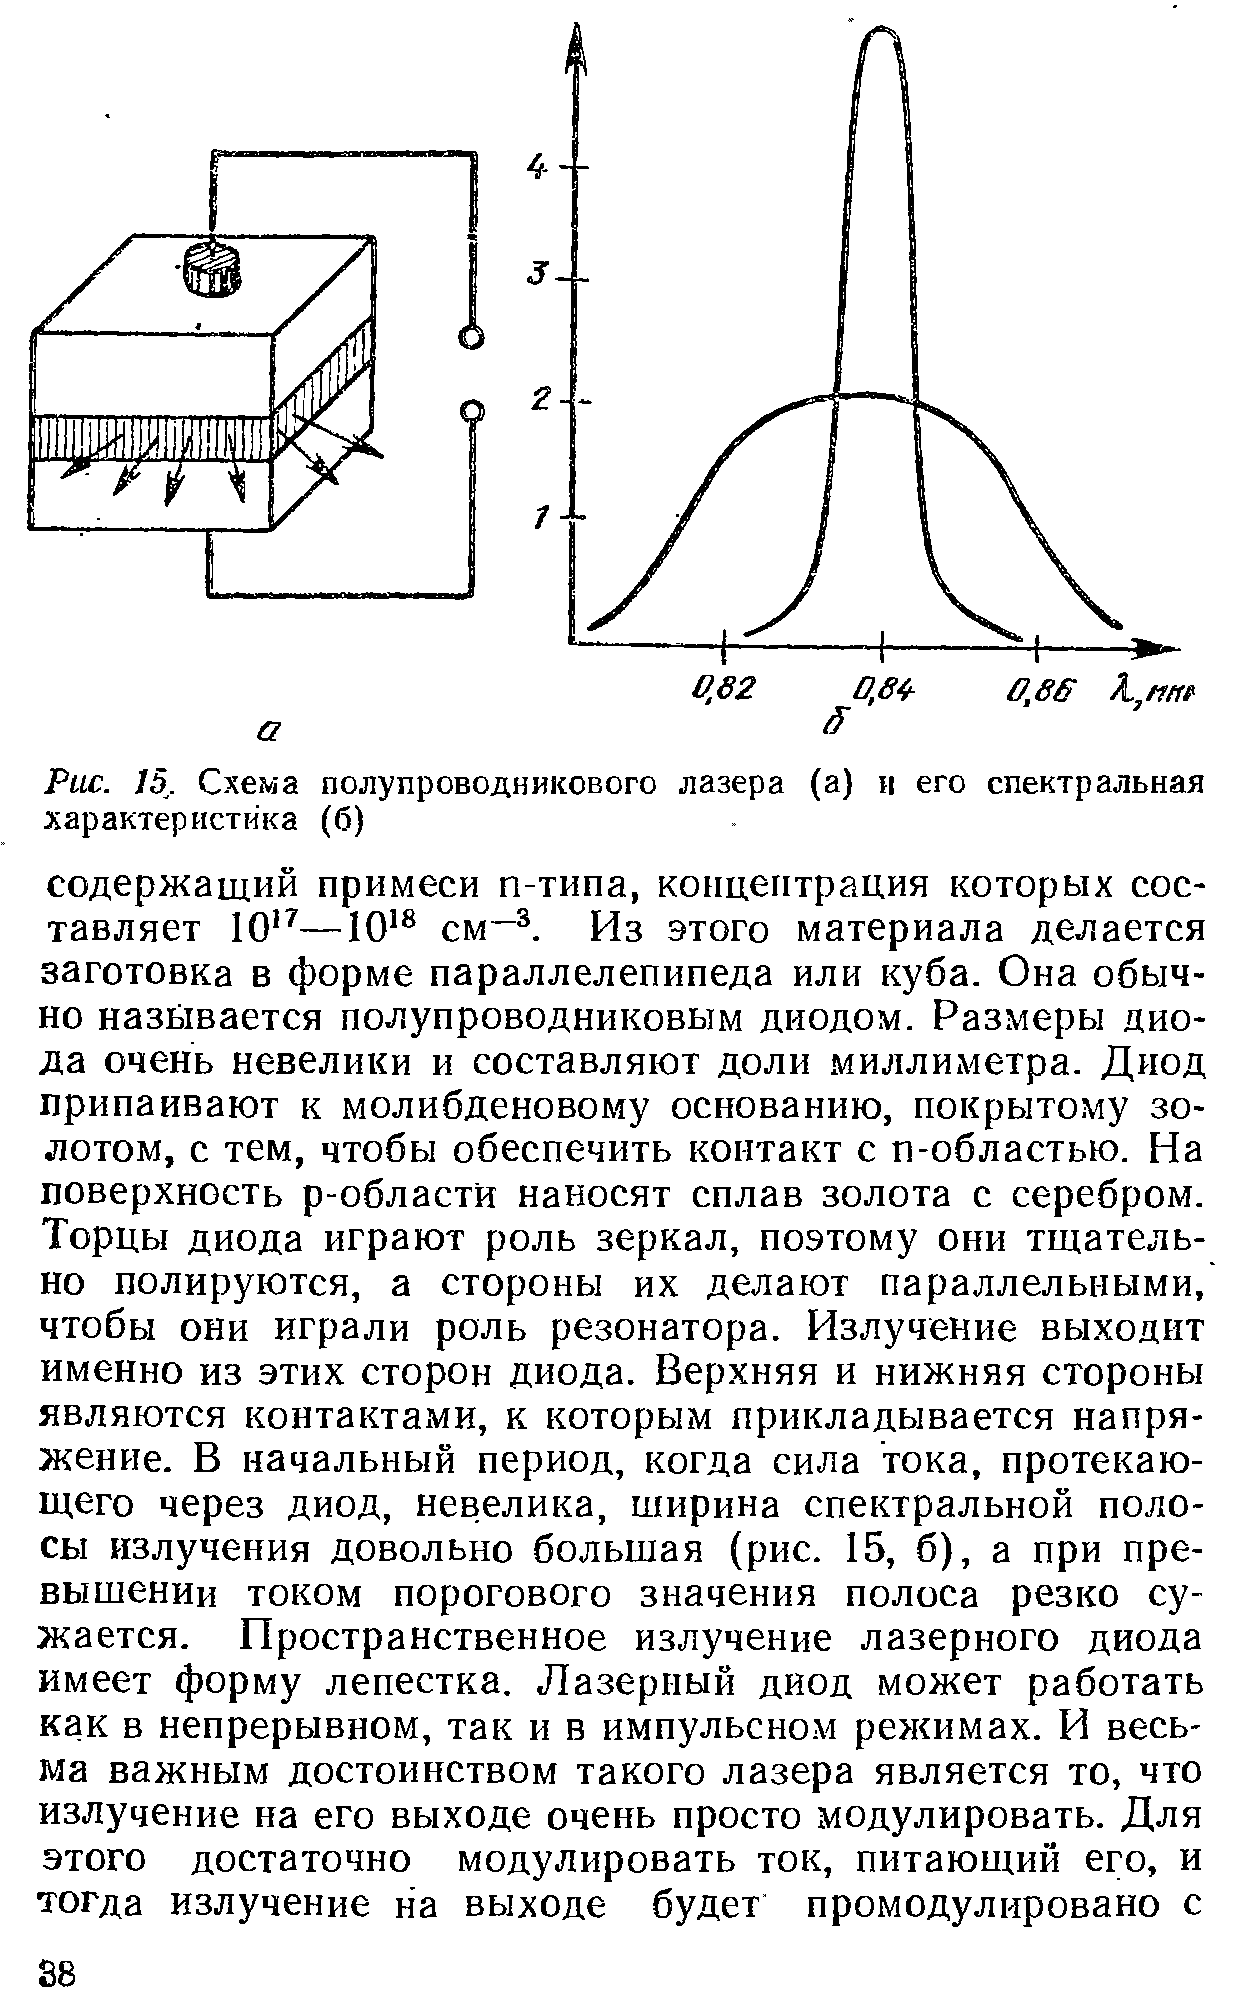 Рис. 15 . Схема полупроводникового лазера (а) и его спектральная характеристика (б)
